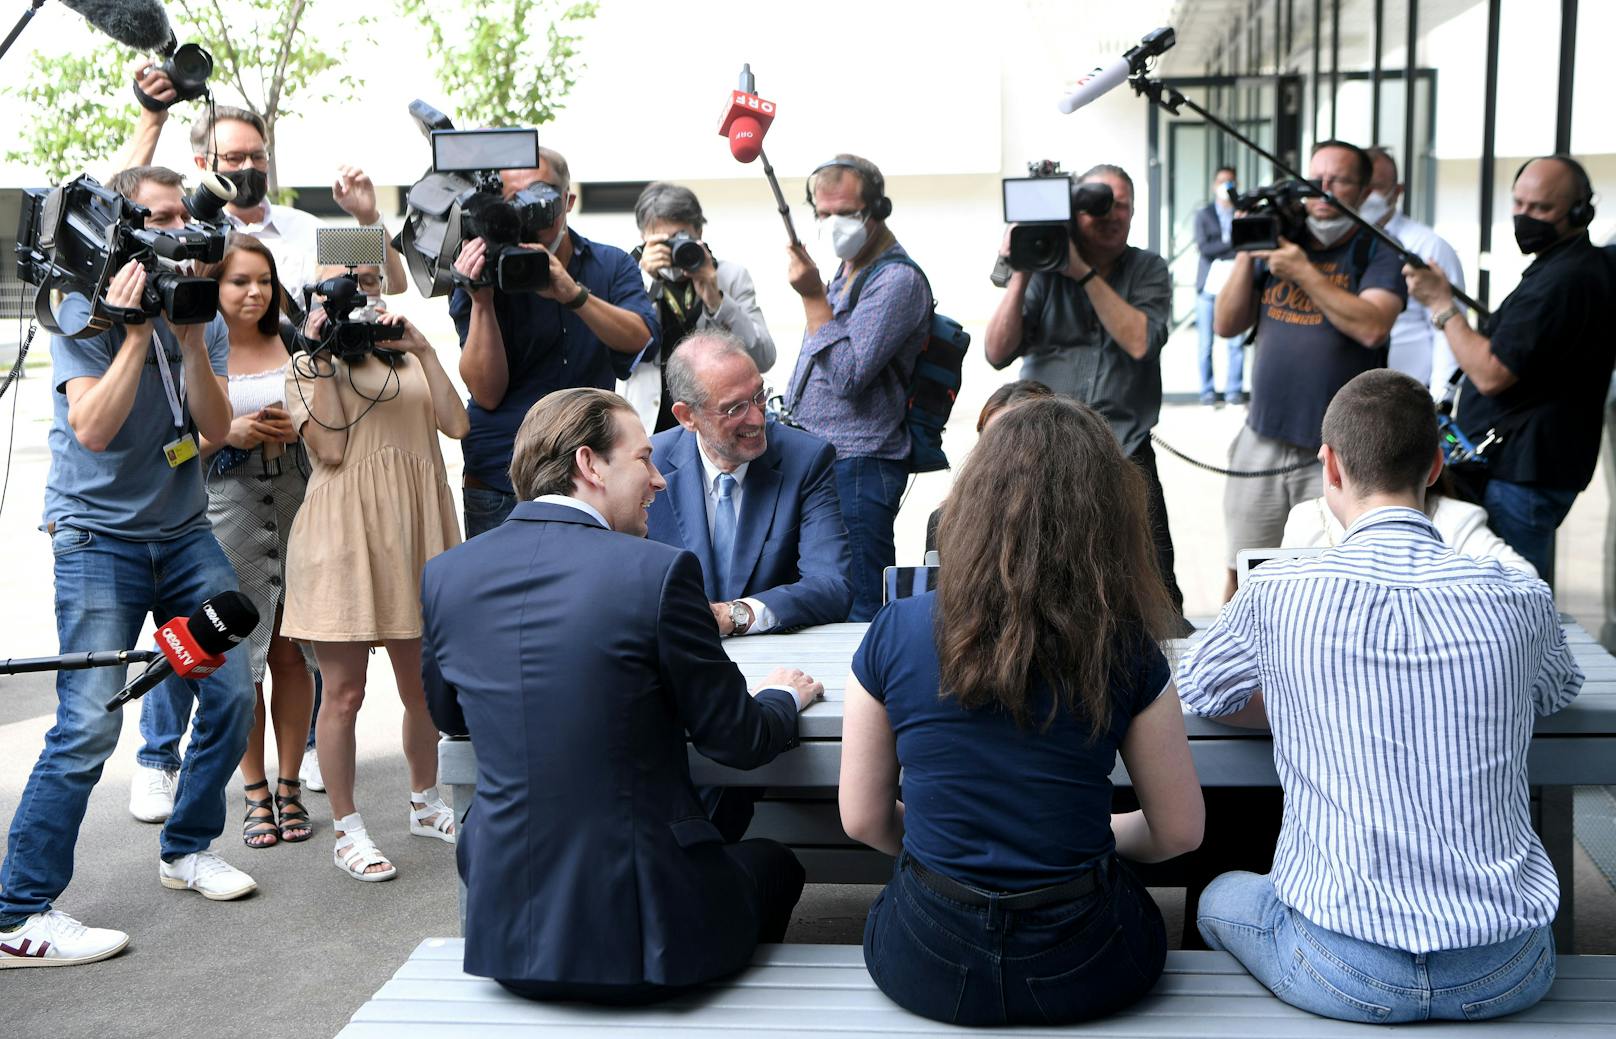 Bundeskanzler Sebastian Kurz (ÖVP) und Bildungsminister Heinz Faßmann im Rahmen des Besuches einer Schule in Wien unter dem Titel "Start für die Laptop- und Tabletklassen" am 23. Juni 2021.